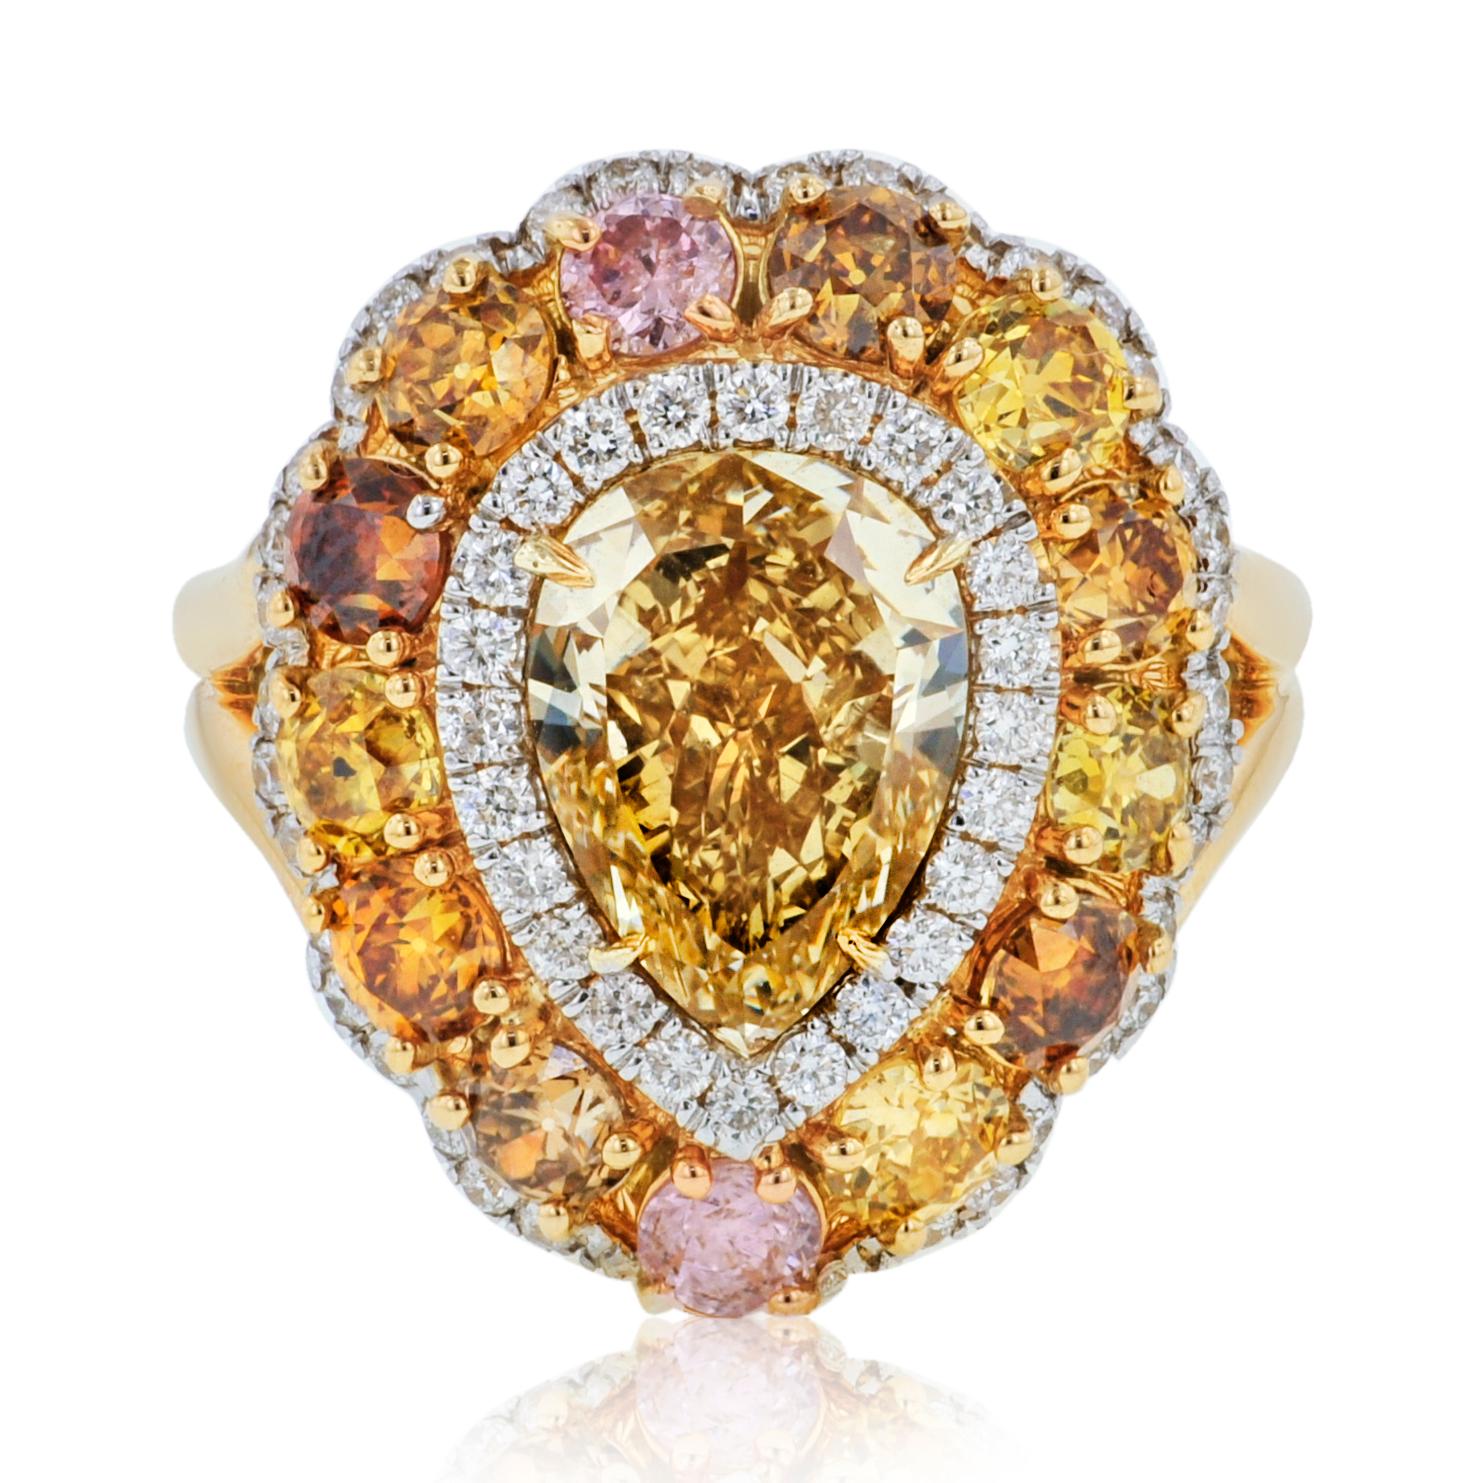 Bague en or jaune et blanc 18kt avec au centre un diamant poire certifié GIA de 3,40ct de couleur jaune brunâtre, pureté vs2  (psc268) serti de 2,57 carats de diamants de couleur fantaisie. 
